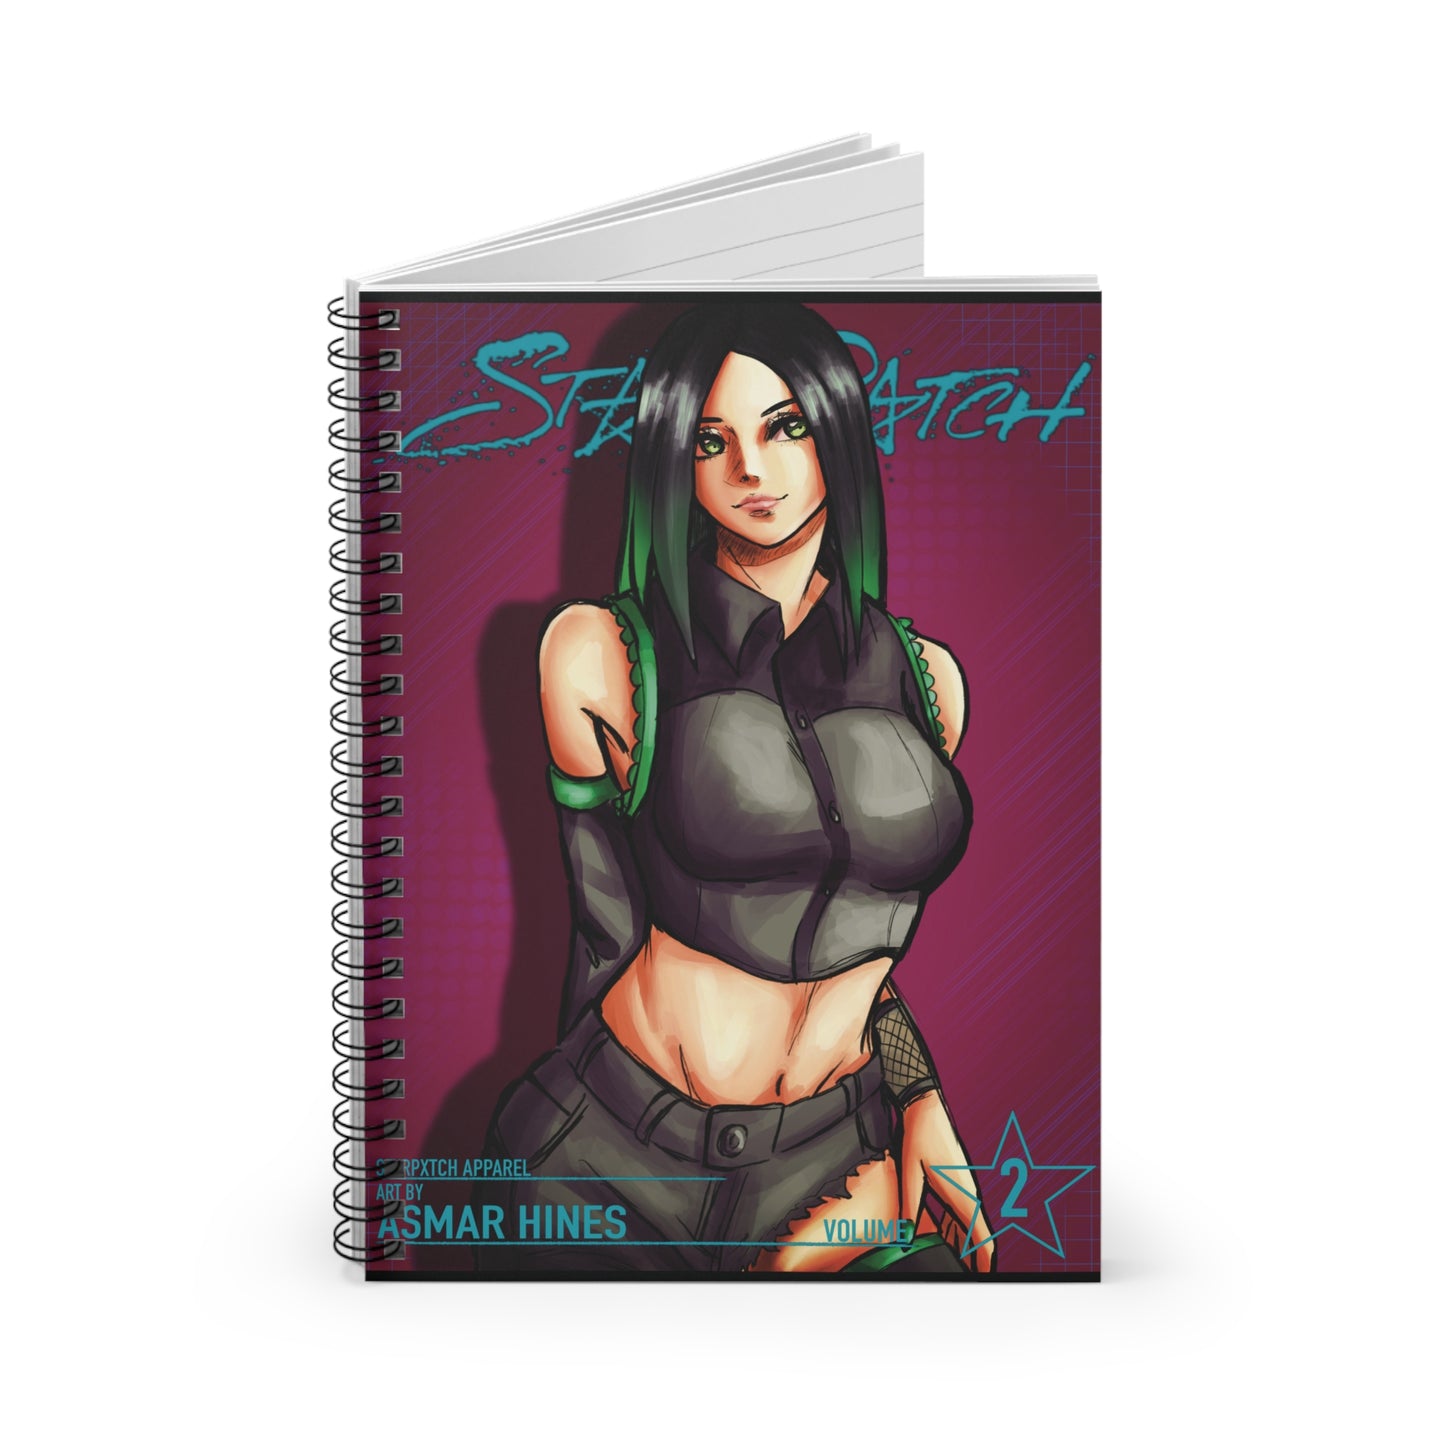 STXRPXTCH ONE-SHOTS- Volume 2 Spiral Notebook